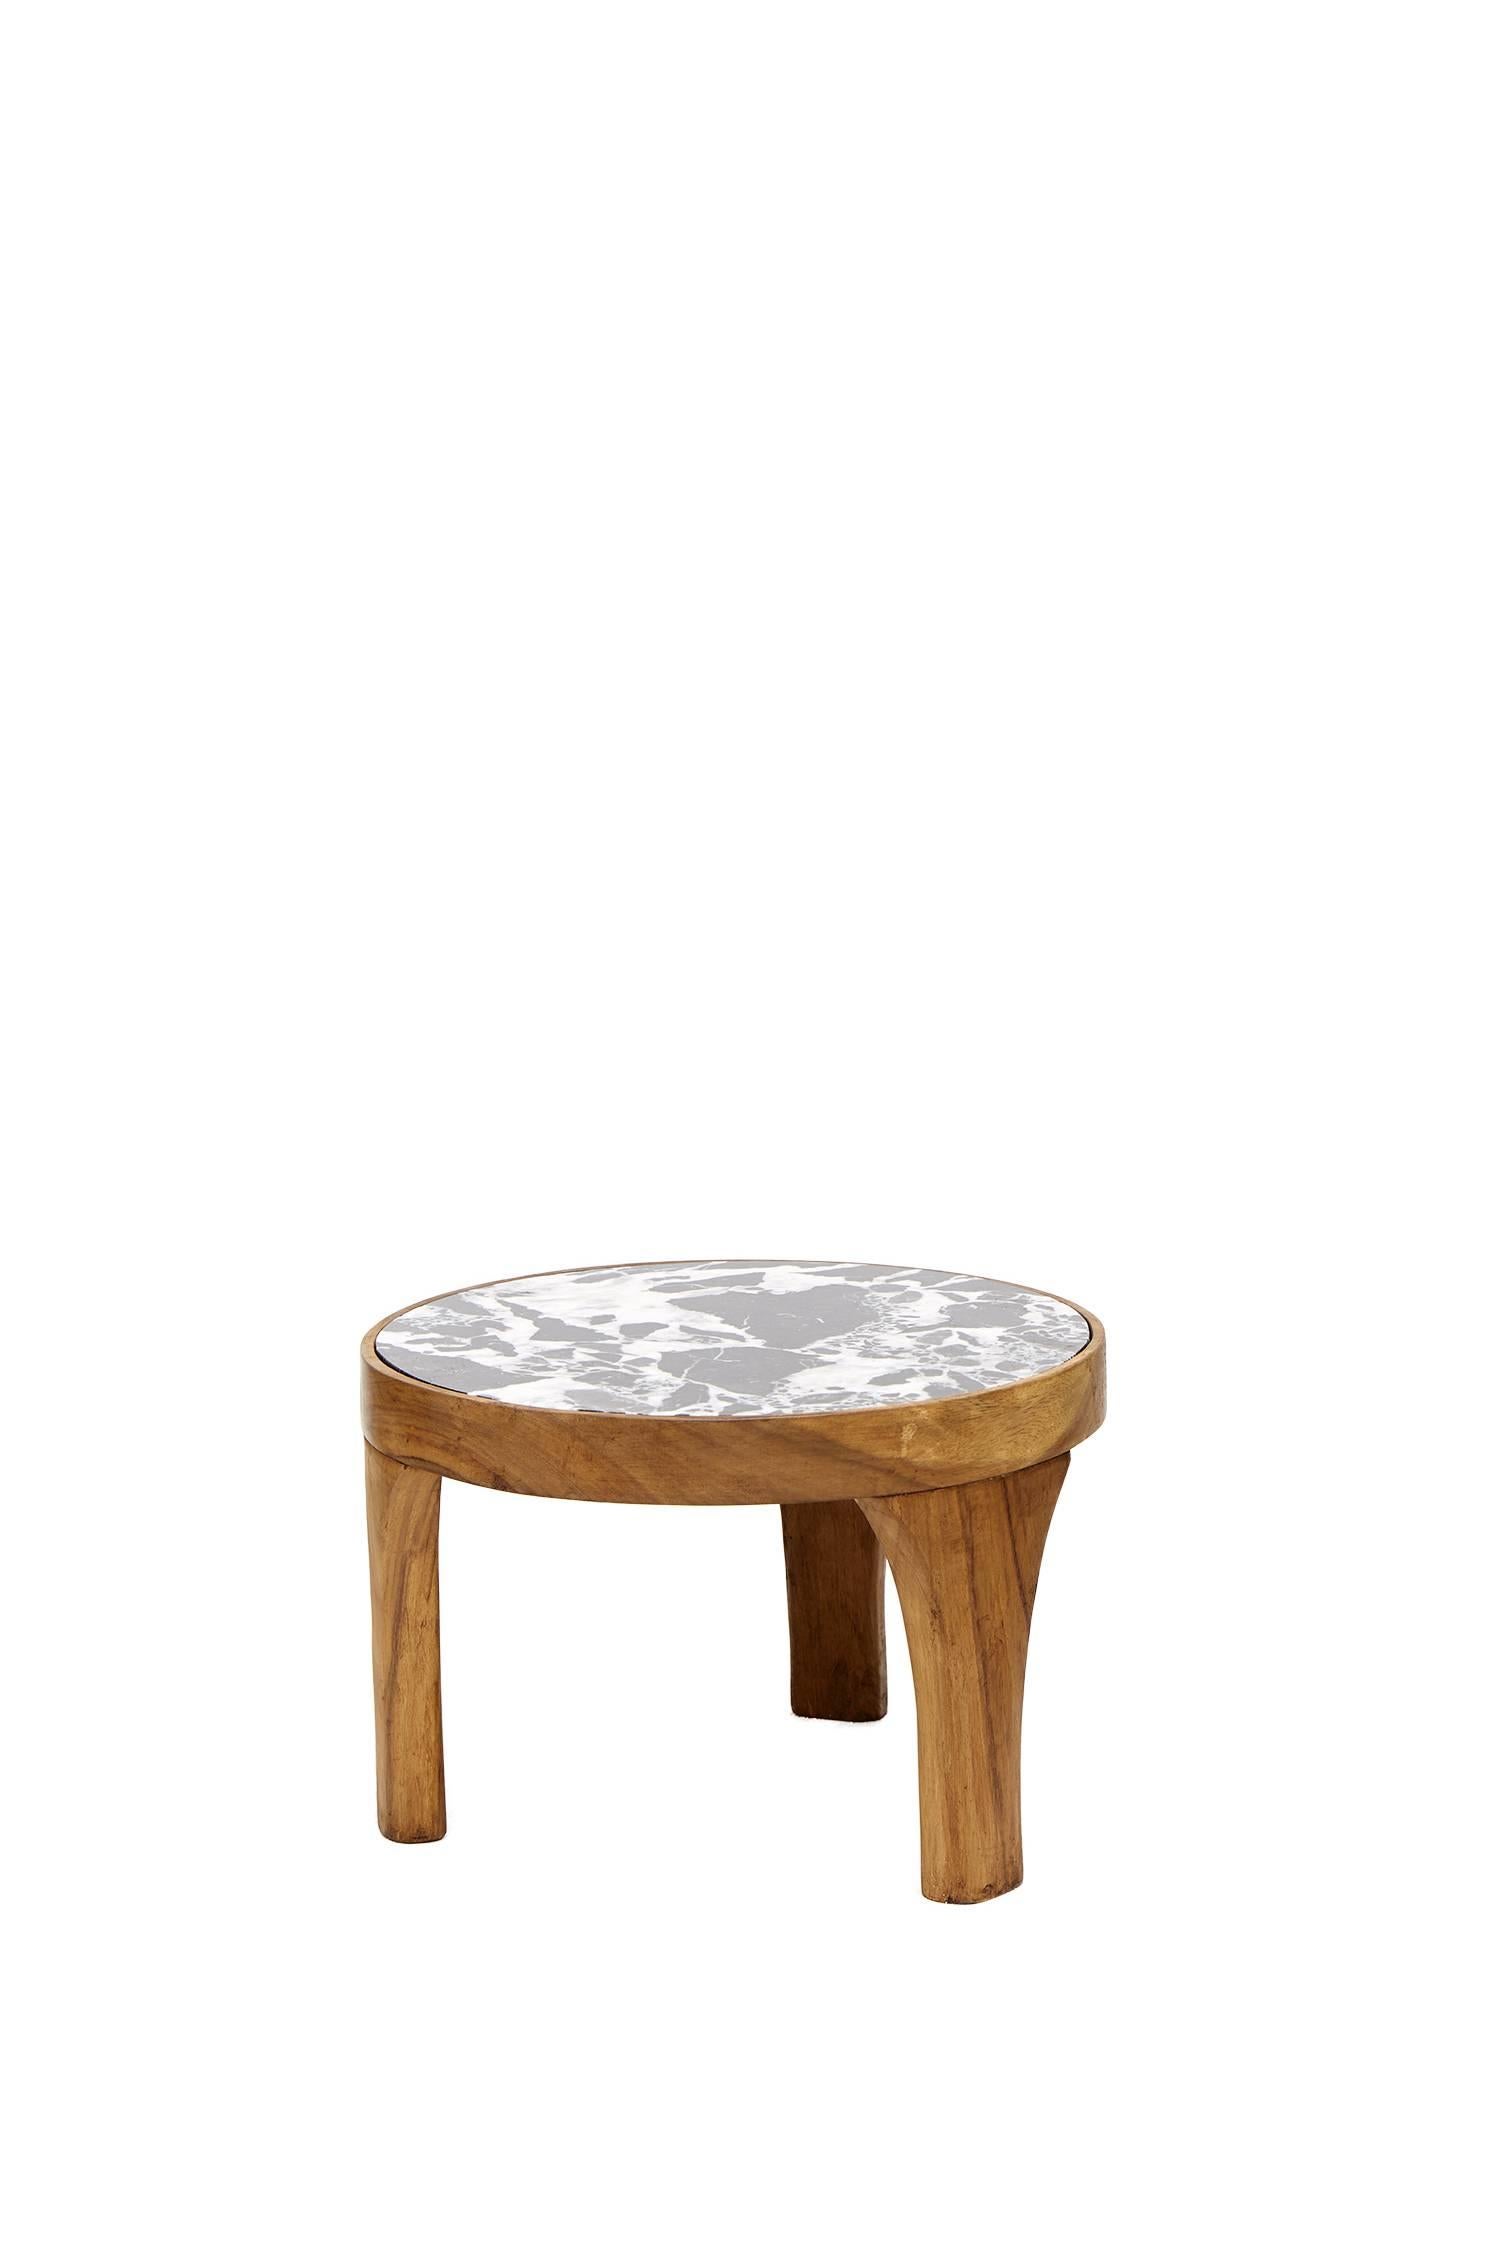 Dieses Set aus zwei handgefertigten Marcelino-Mitteltischen ist eine einzigartige Kreation von Leon Leon Design aus Mexiko-Stadt. Beide sind aus massivem tropischem Parota-Holz gefertigt und handgeschnitzt, der große mit einer Tischplatte aus